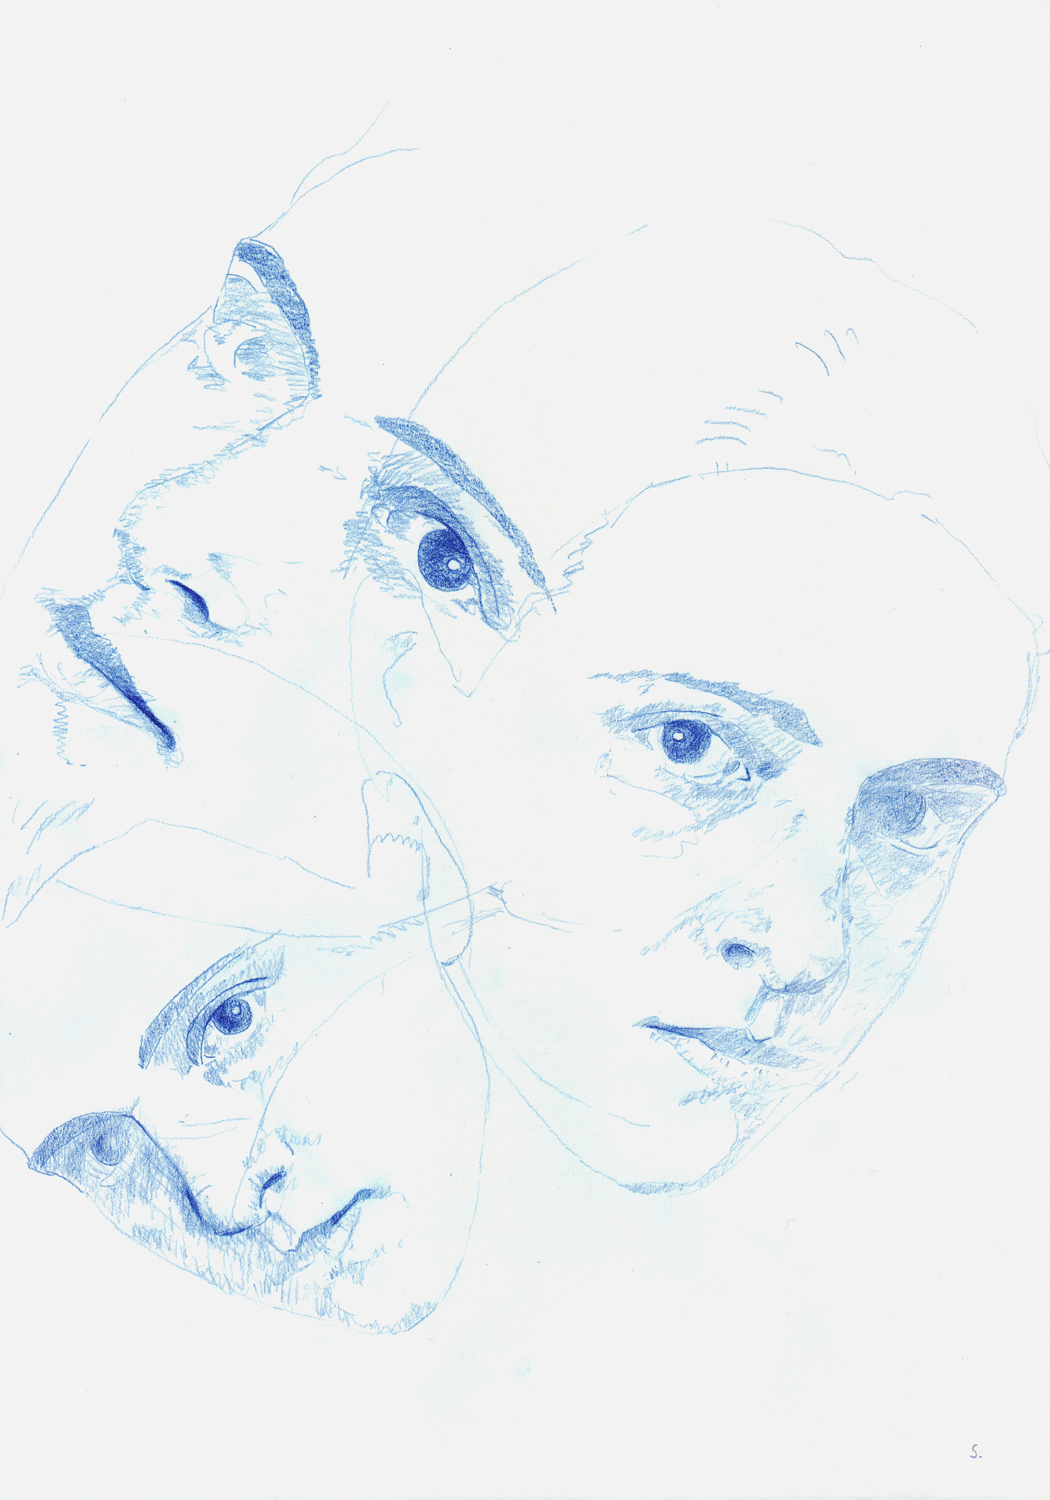 "Alice Dorell, »Drie Dames« 07", 2017, Zeichnung auf Büttenpapier, 42 x 29,5cm, blauer Farbstift; ©: Konstanze Sailer